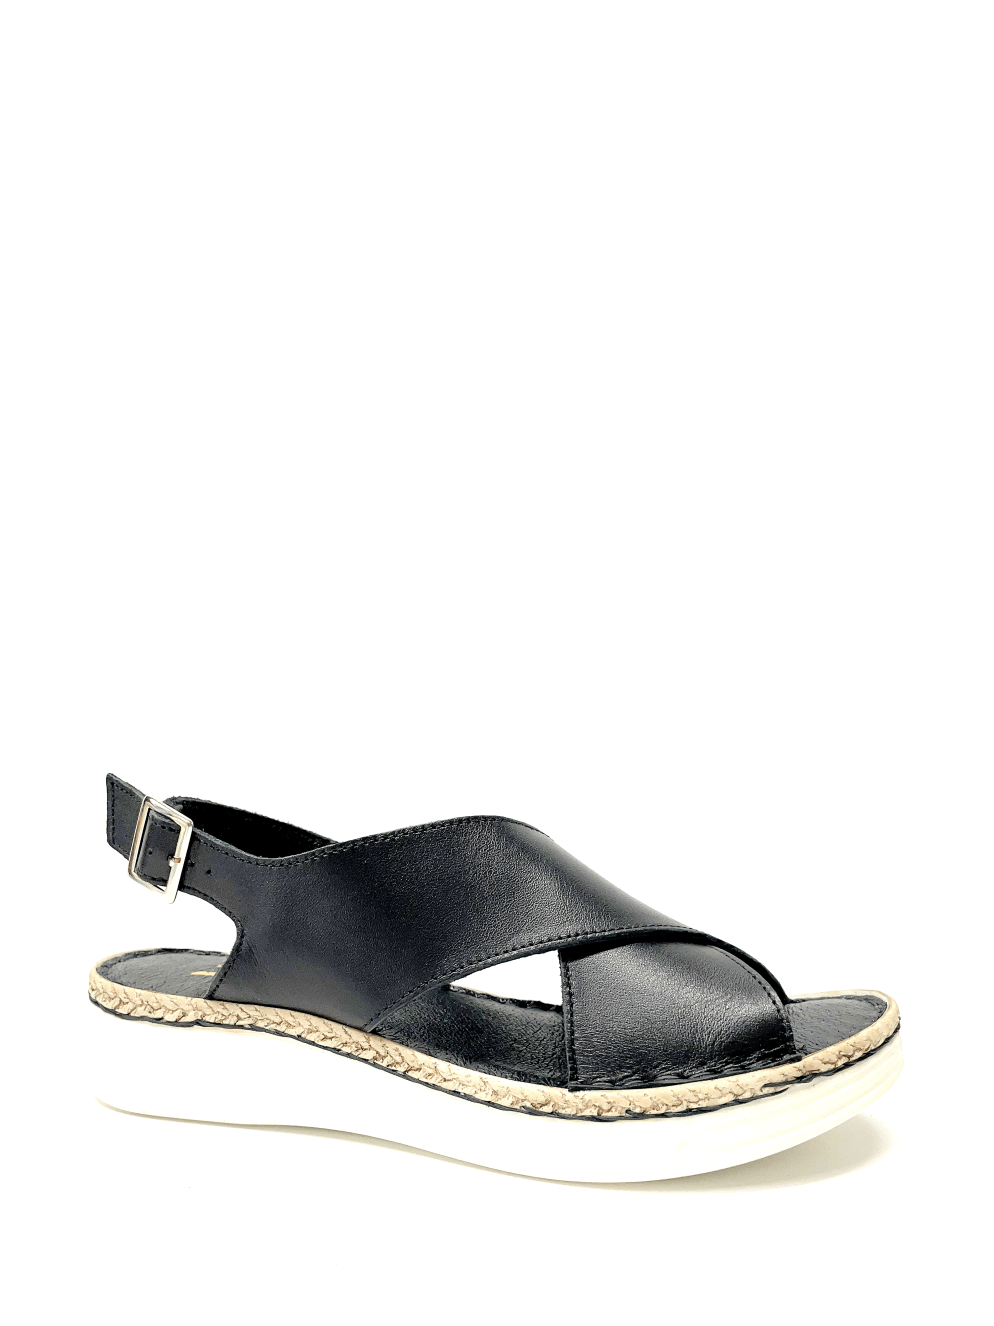 V-Italia 950/G Sandal in Black